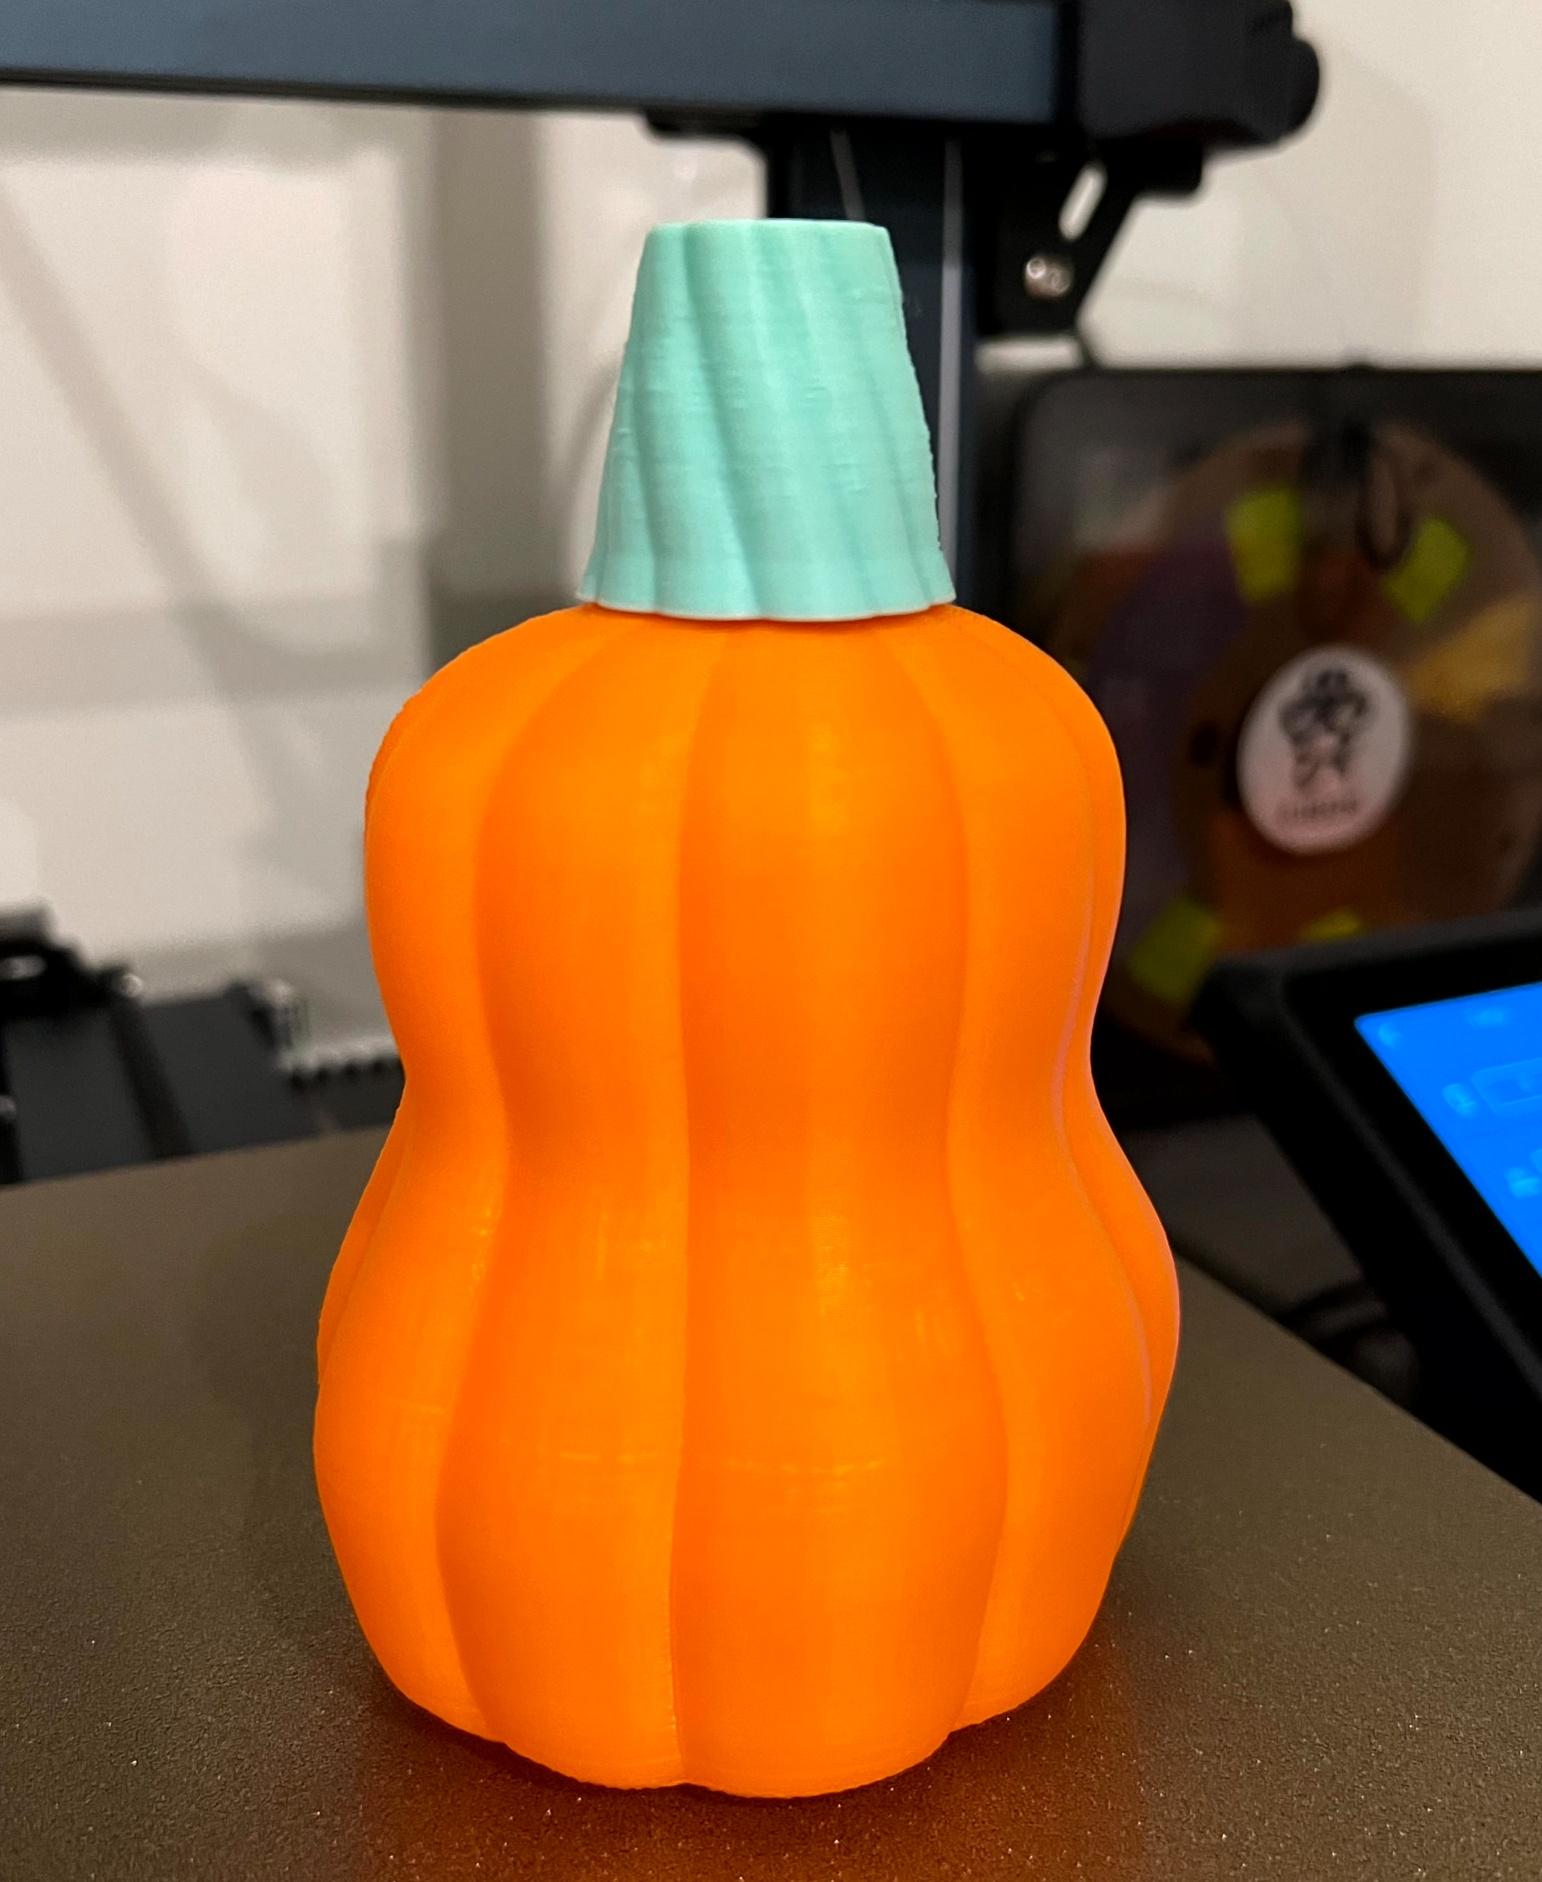 Pumpkin Potion Bottle - Orange Polymaker PLA+ 
Matte Green iSANMATE PLA+

Vase Printed at 125%
Stem at 100% - 3d model